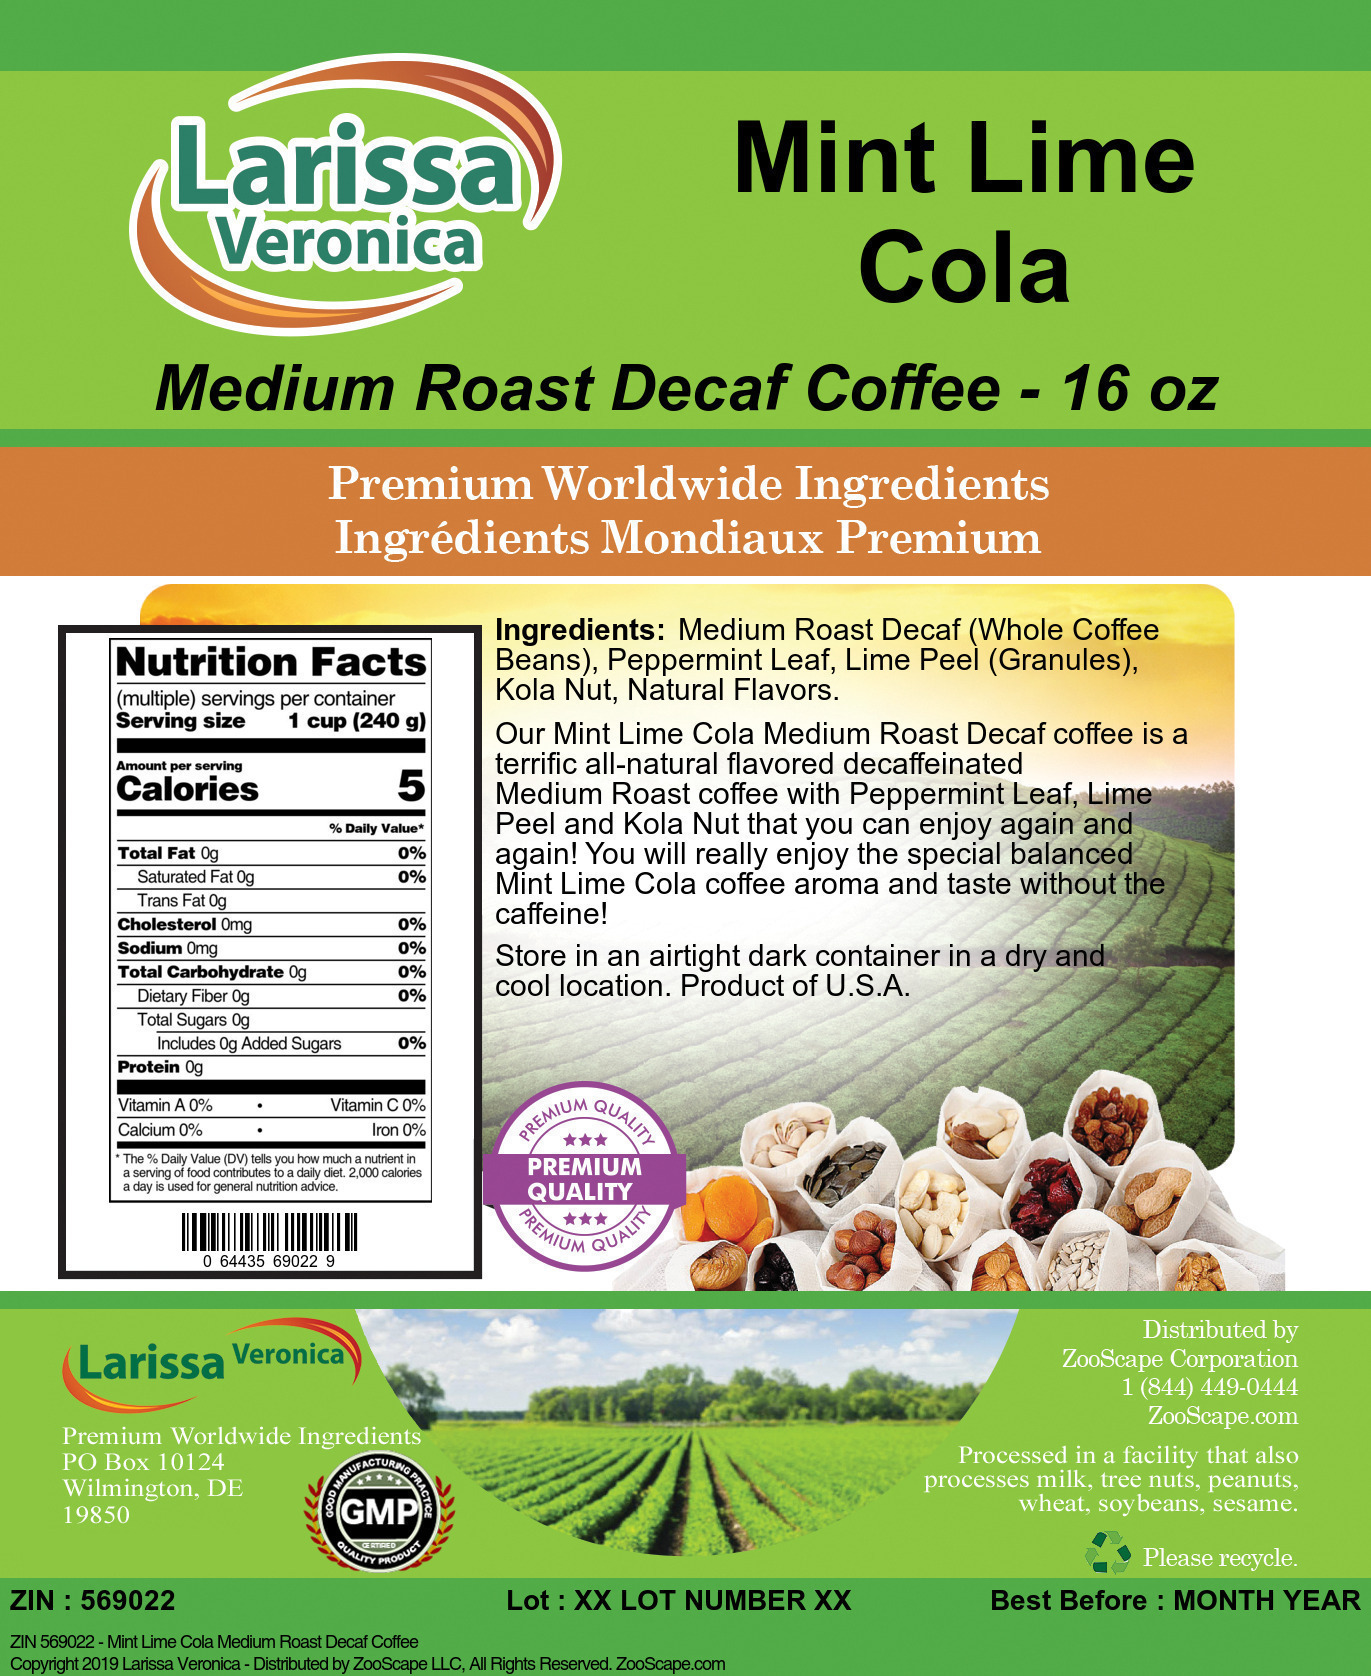 Mint Lime Cola Medium Roast Decaf Coffee - Label